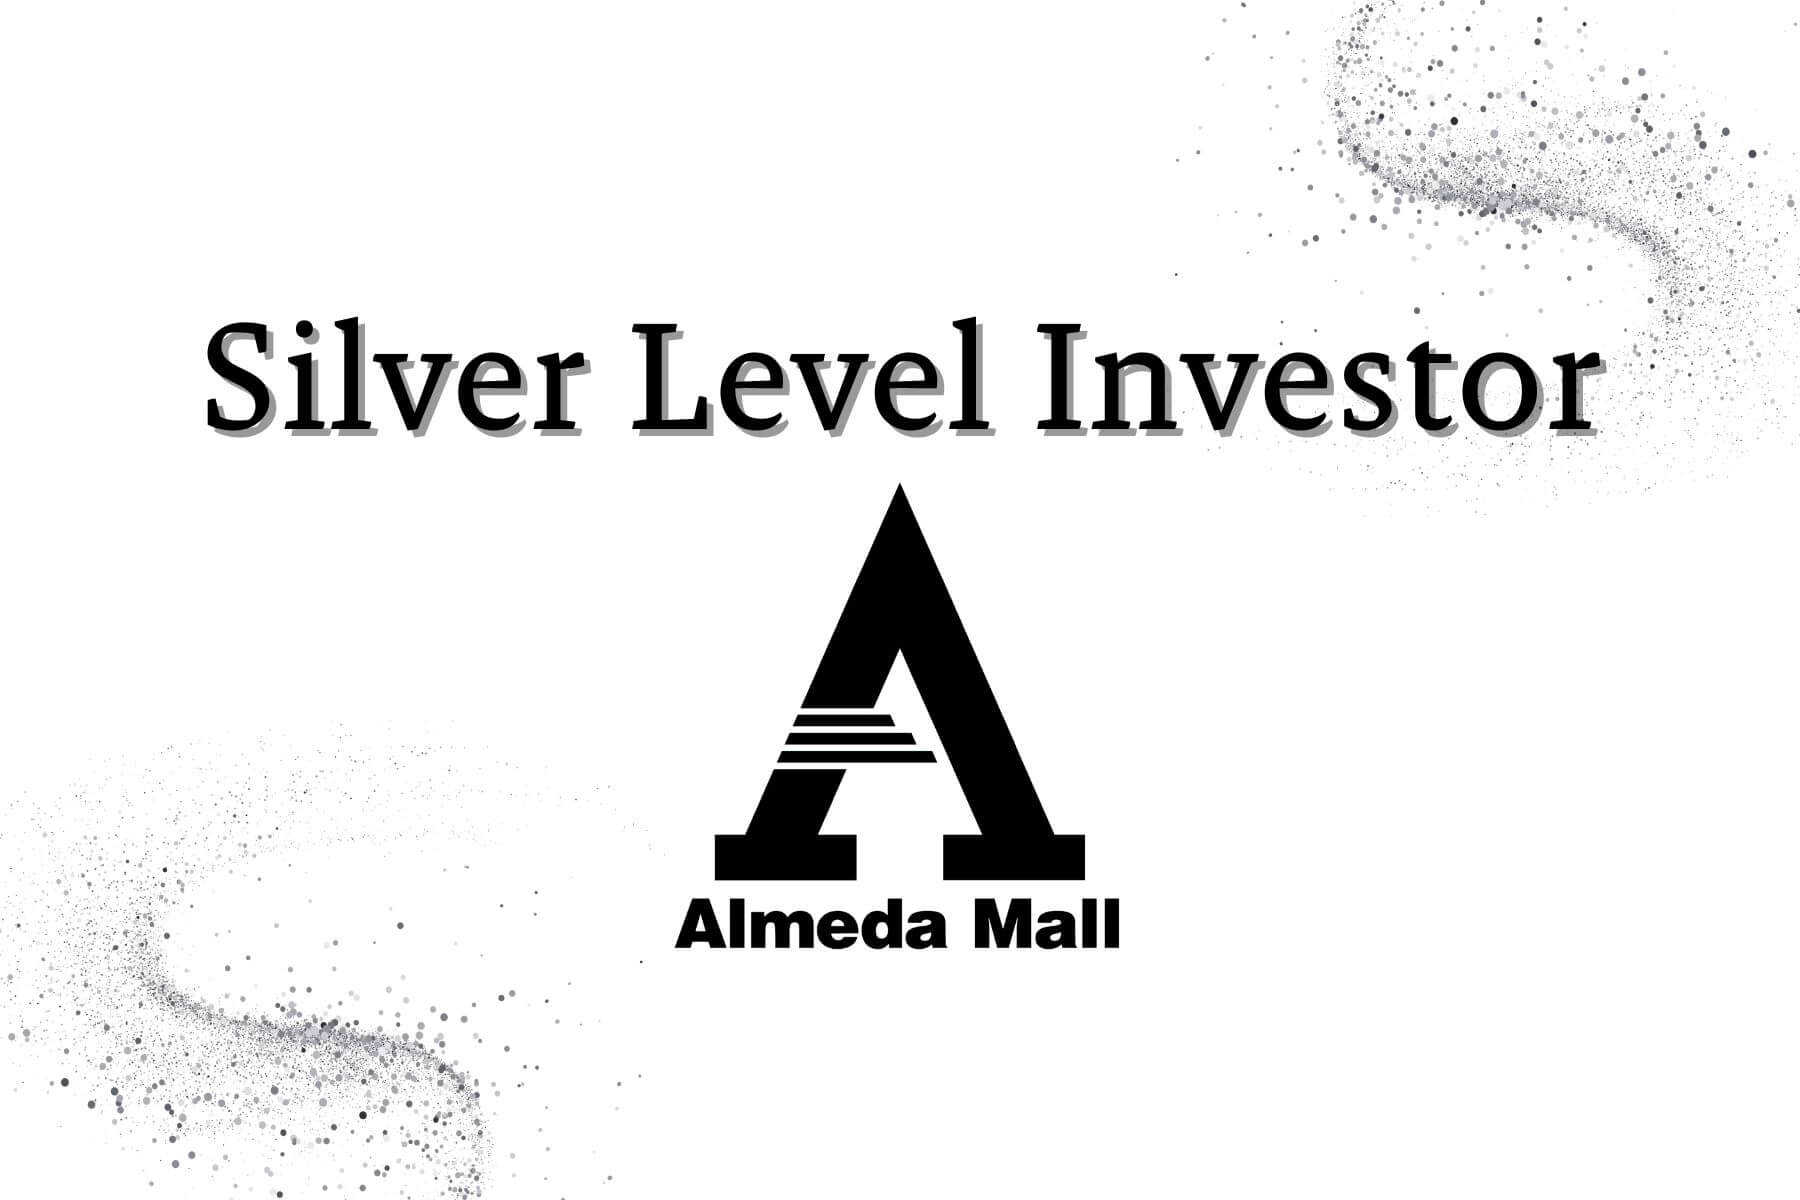 Almeda Mall Silver Level Investor